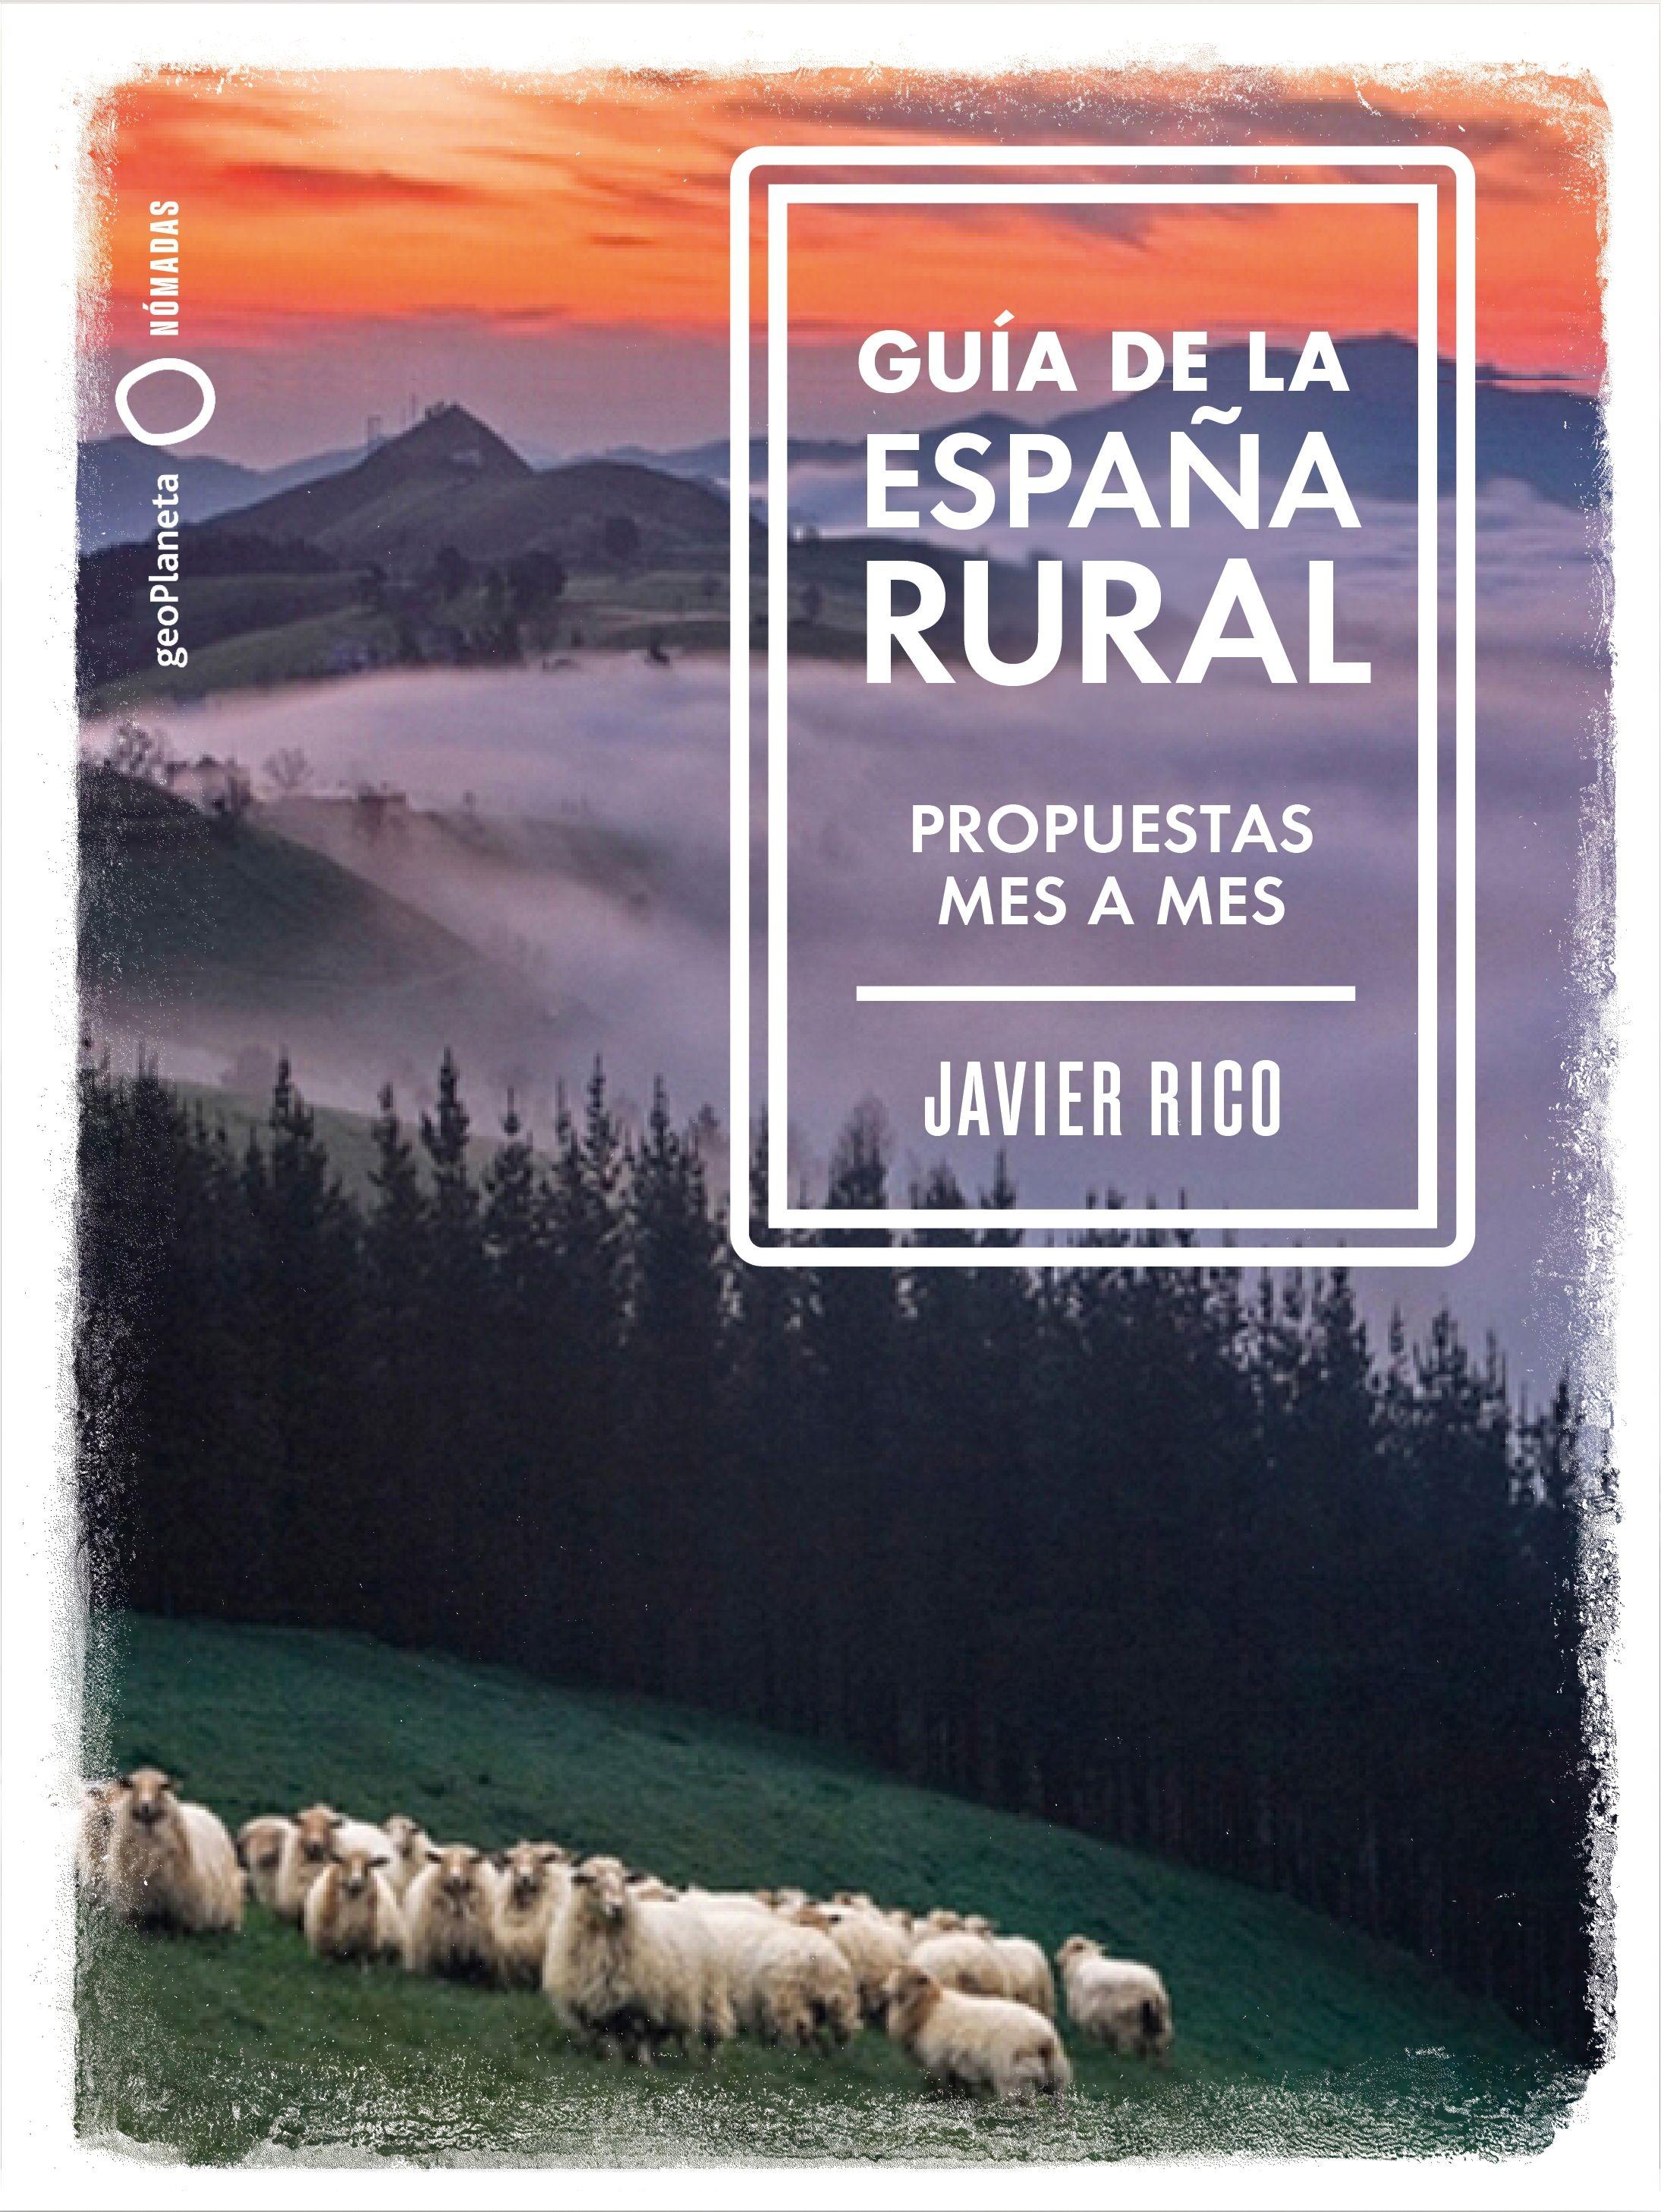 Guía de la España rural "Propuestas mes a mes"